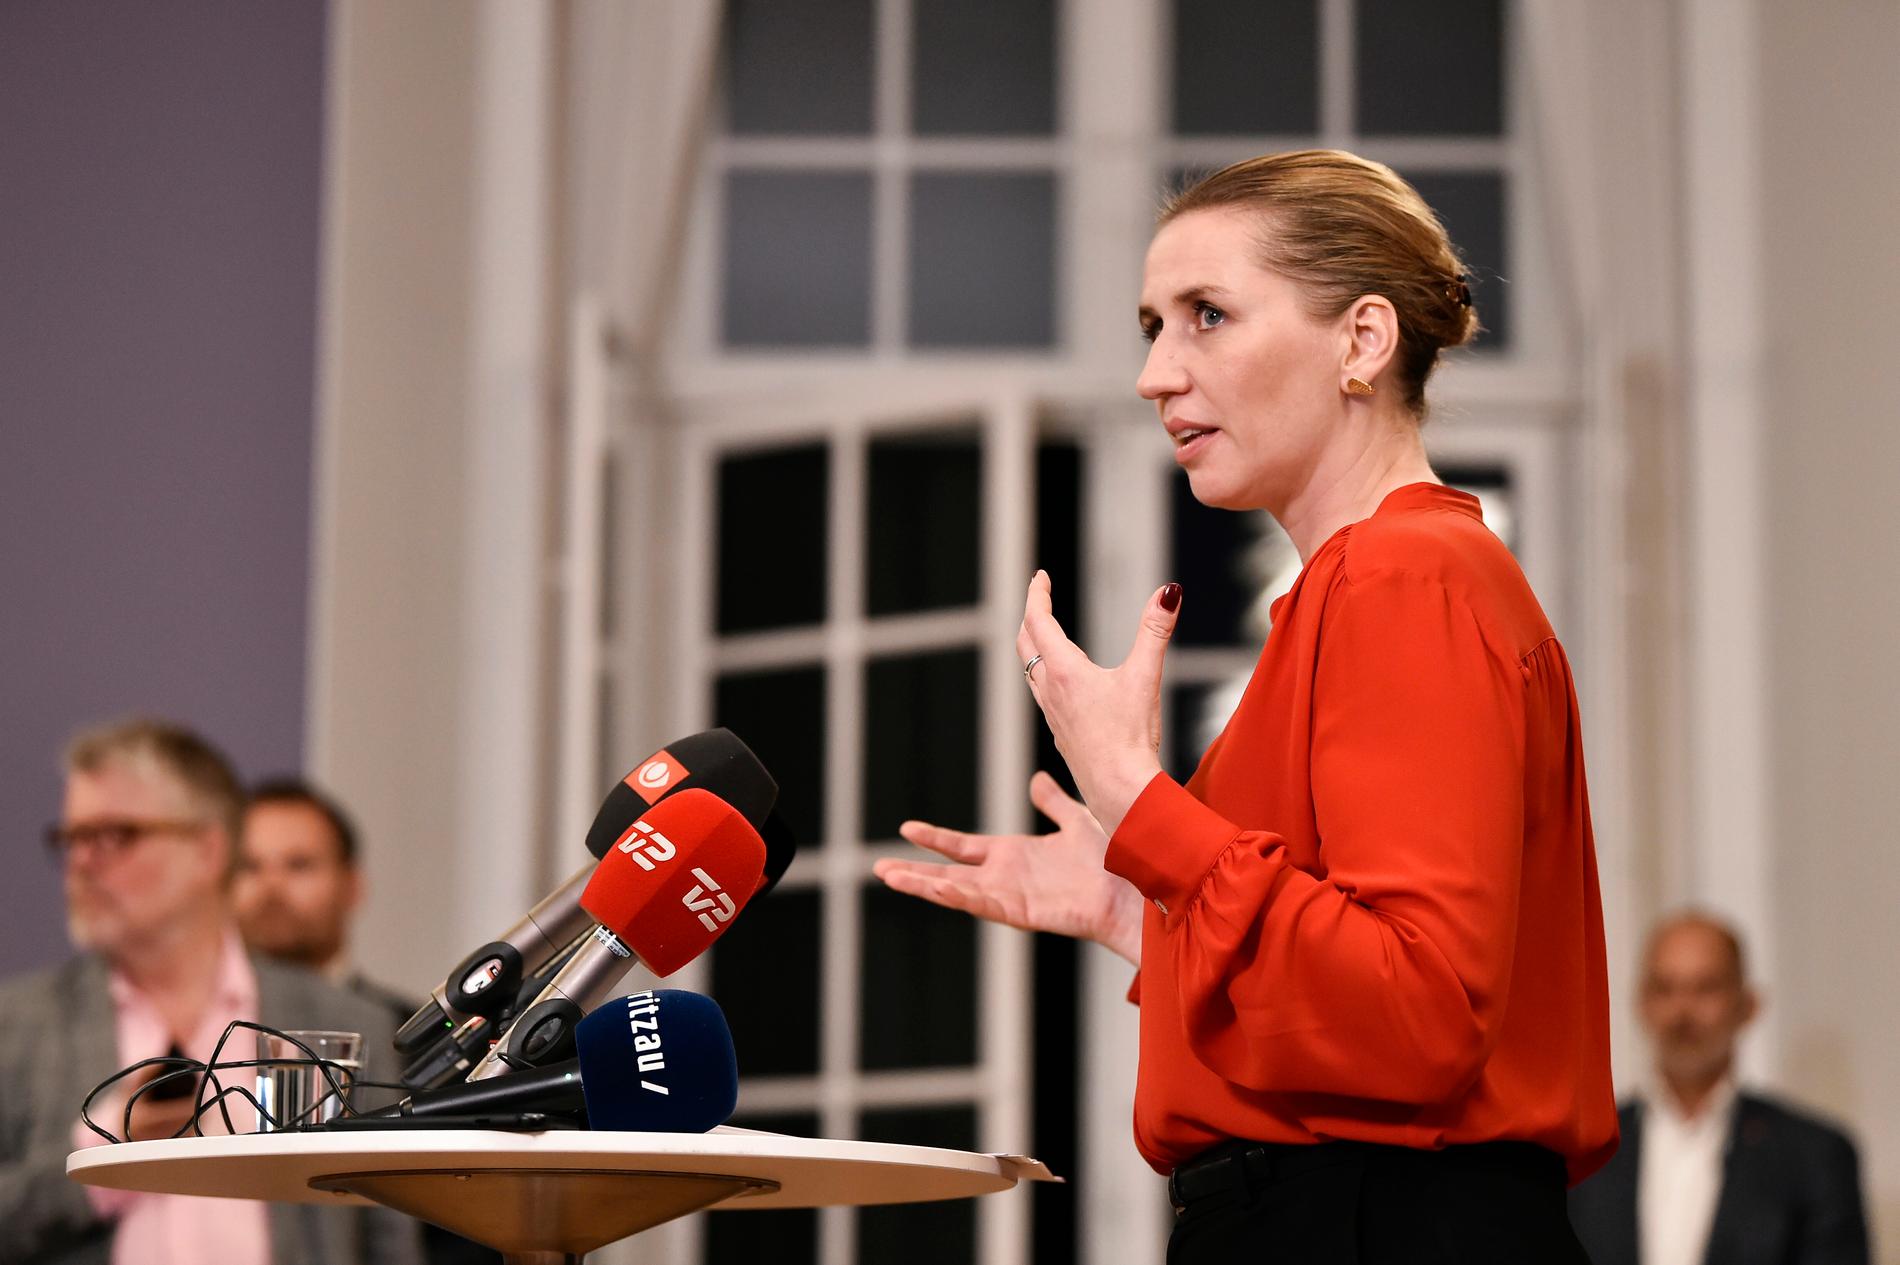 Mette Frederiksen, partiledare för Socialdemokratiet, kommer att ta över som statsminister i Danmark och leda en enpartiregering i minoritet med stöd av Radikale Venstre, Enhedslisten och Socialistisk Folkeparti.